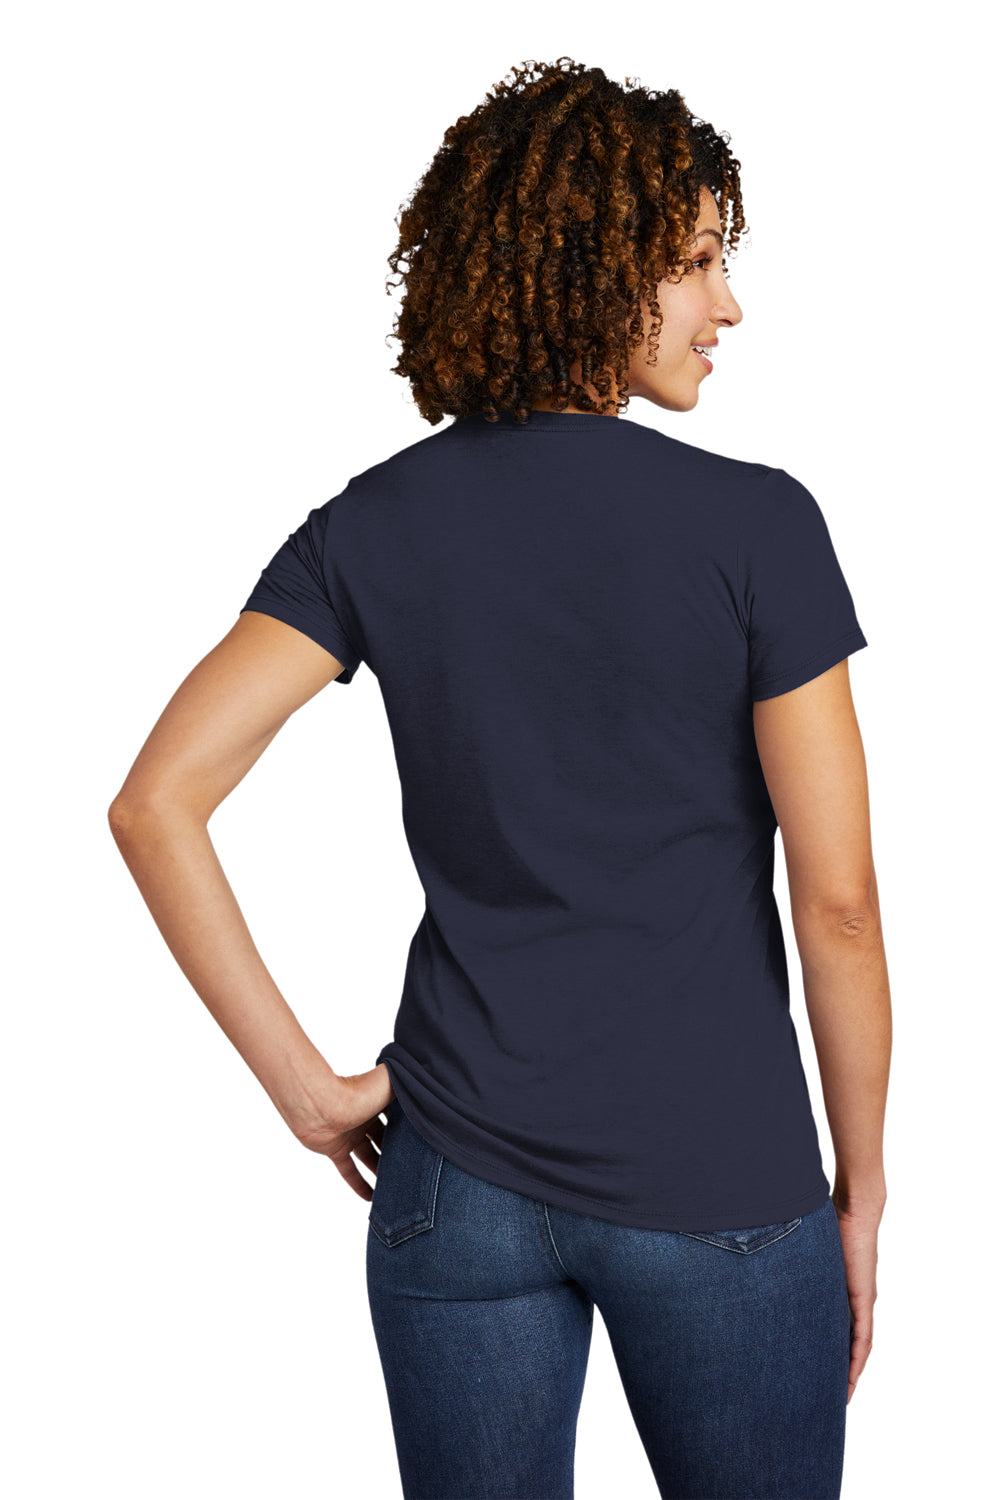 Allmade AL2018 Womens Short Sleeve V-Neck T-Shirt Night Sky Navy Blue Model Back